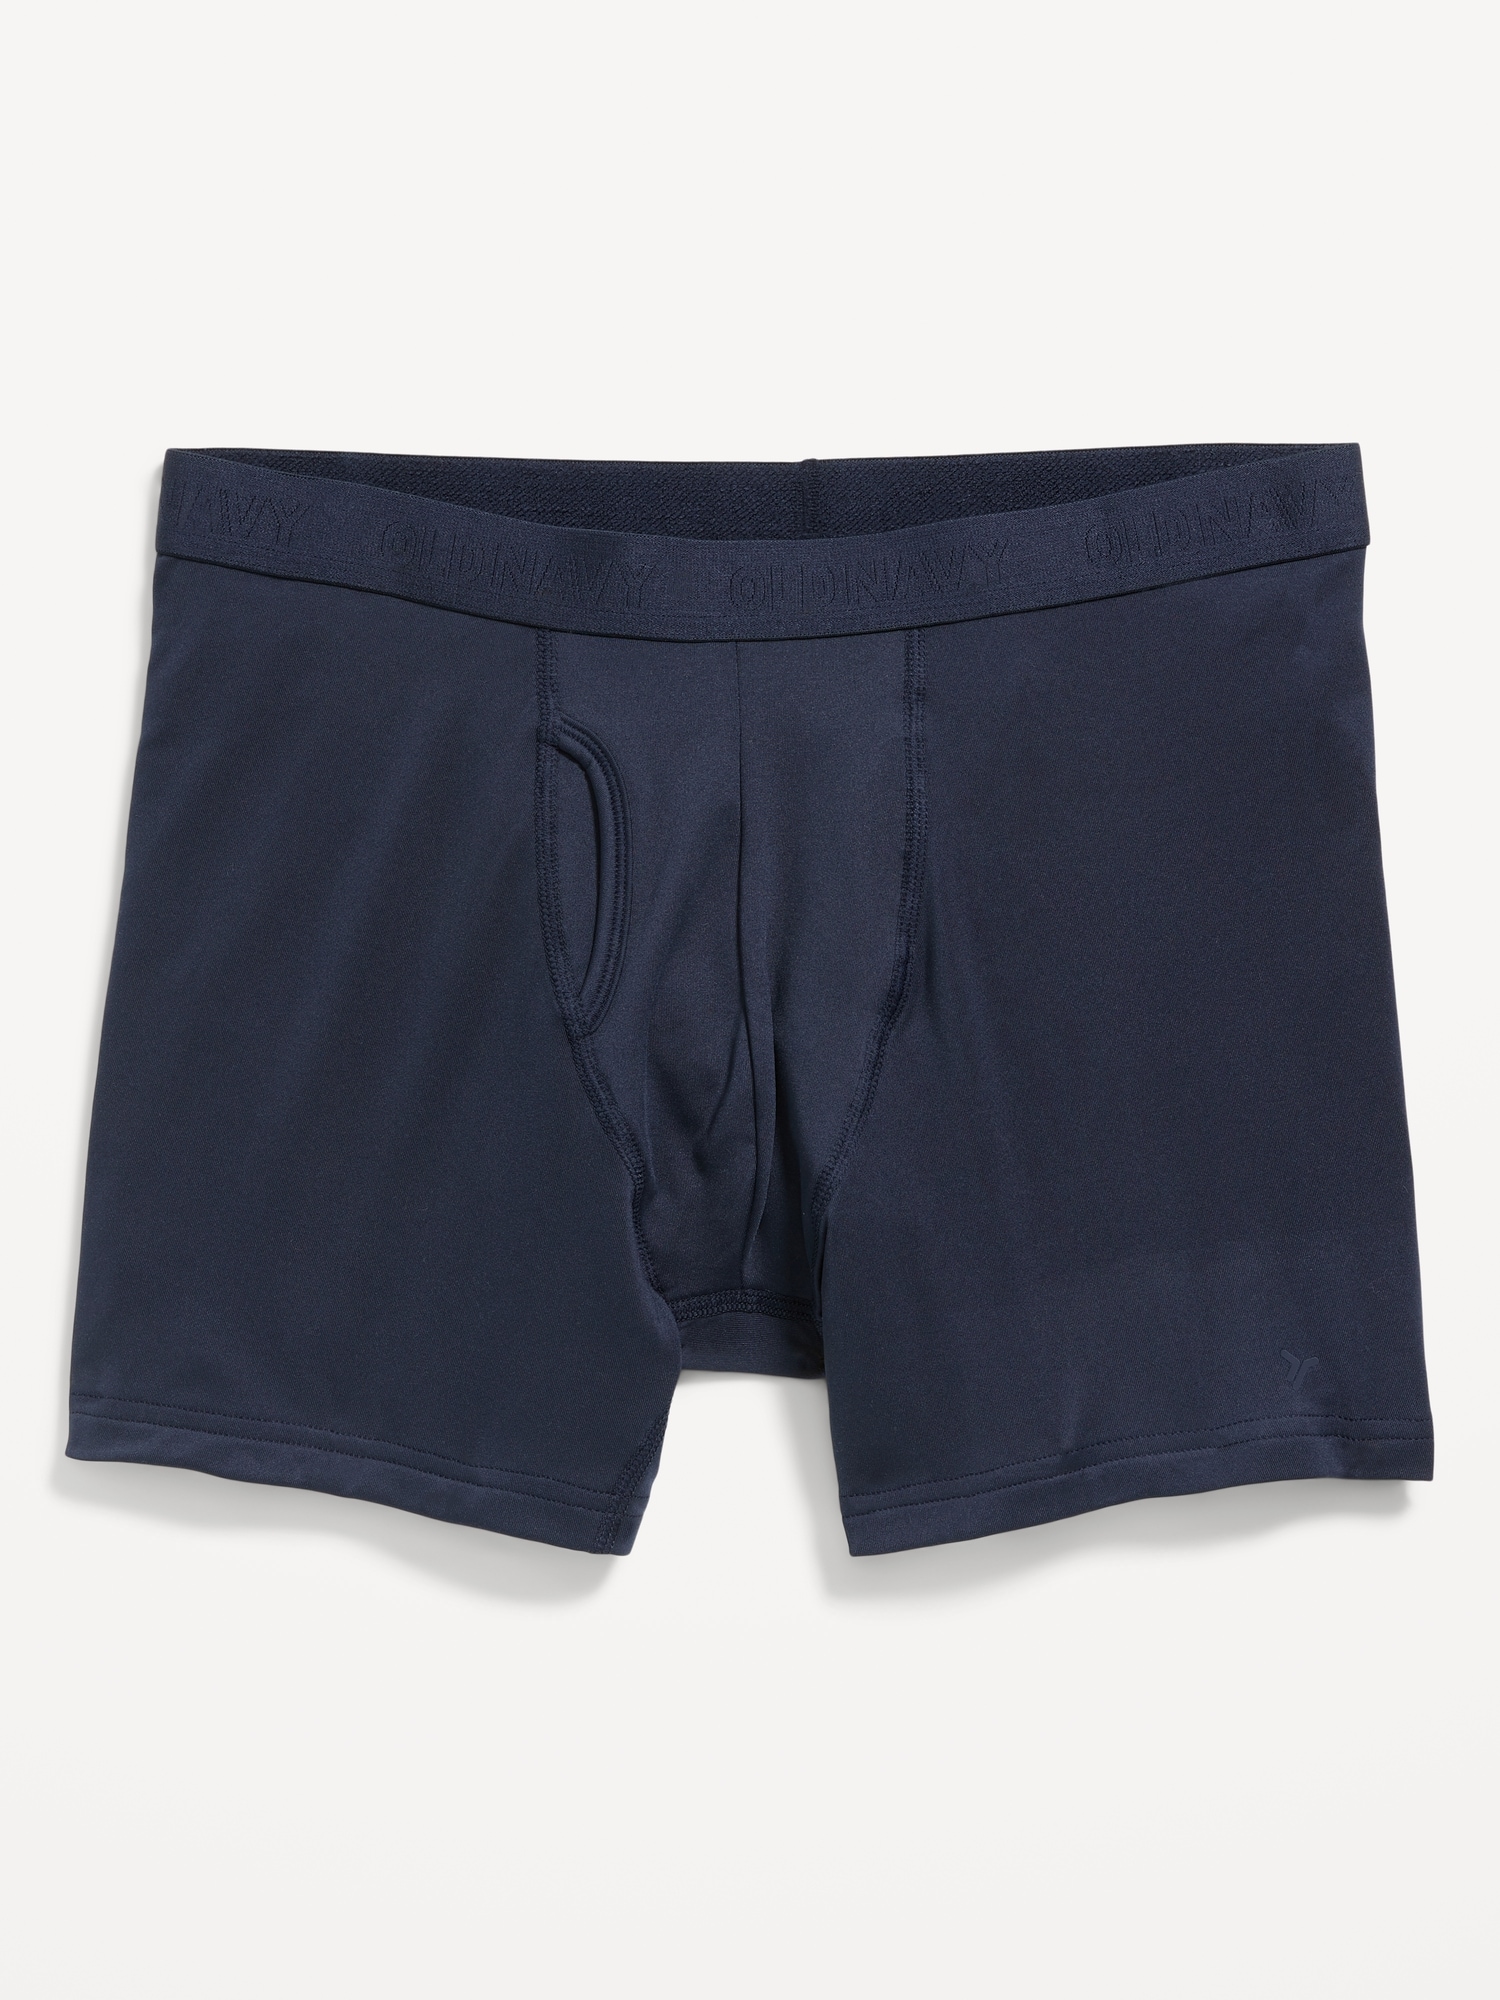 Go-Dry Cool Performance Boxer-Brief Underwear -- 5-inch inseam | Old Navy